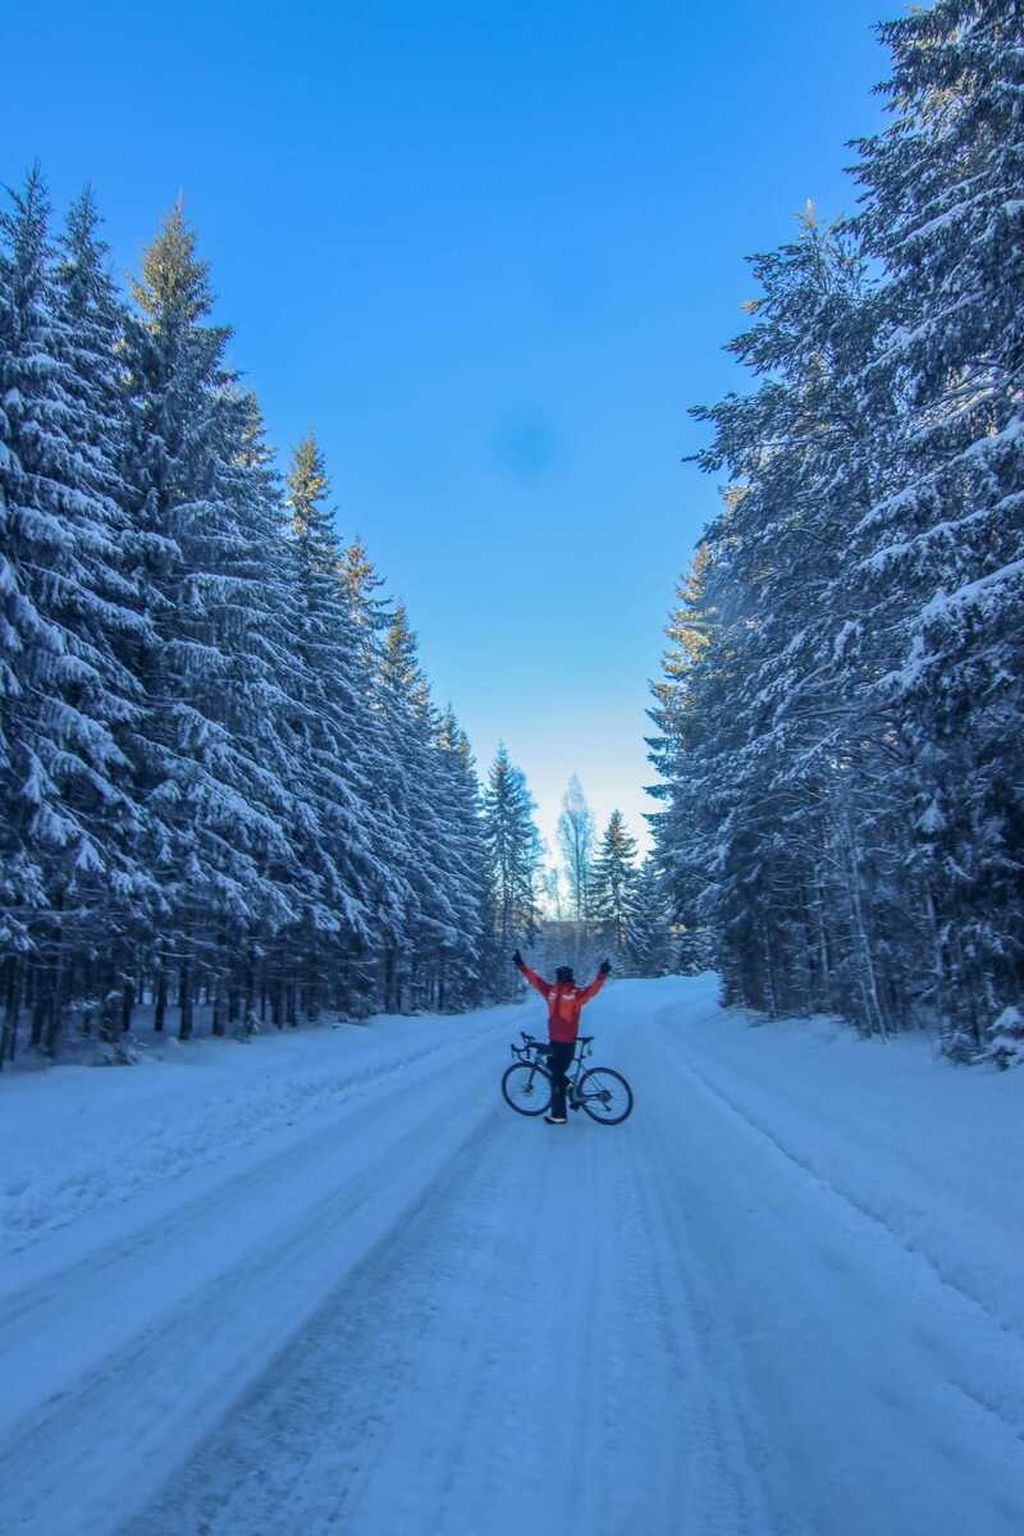 Royke Lumowa dalam perjalanan menuju Tolita, Norwegia. Salju masih tebal. Kondisi itu menjadi tantangan terberat dalam <i>touring</i> sepeda ini.